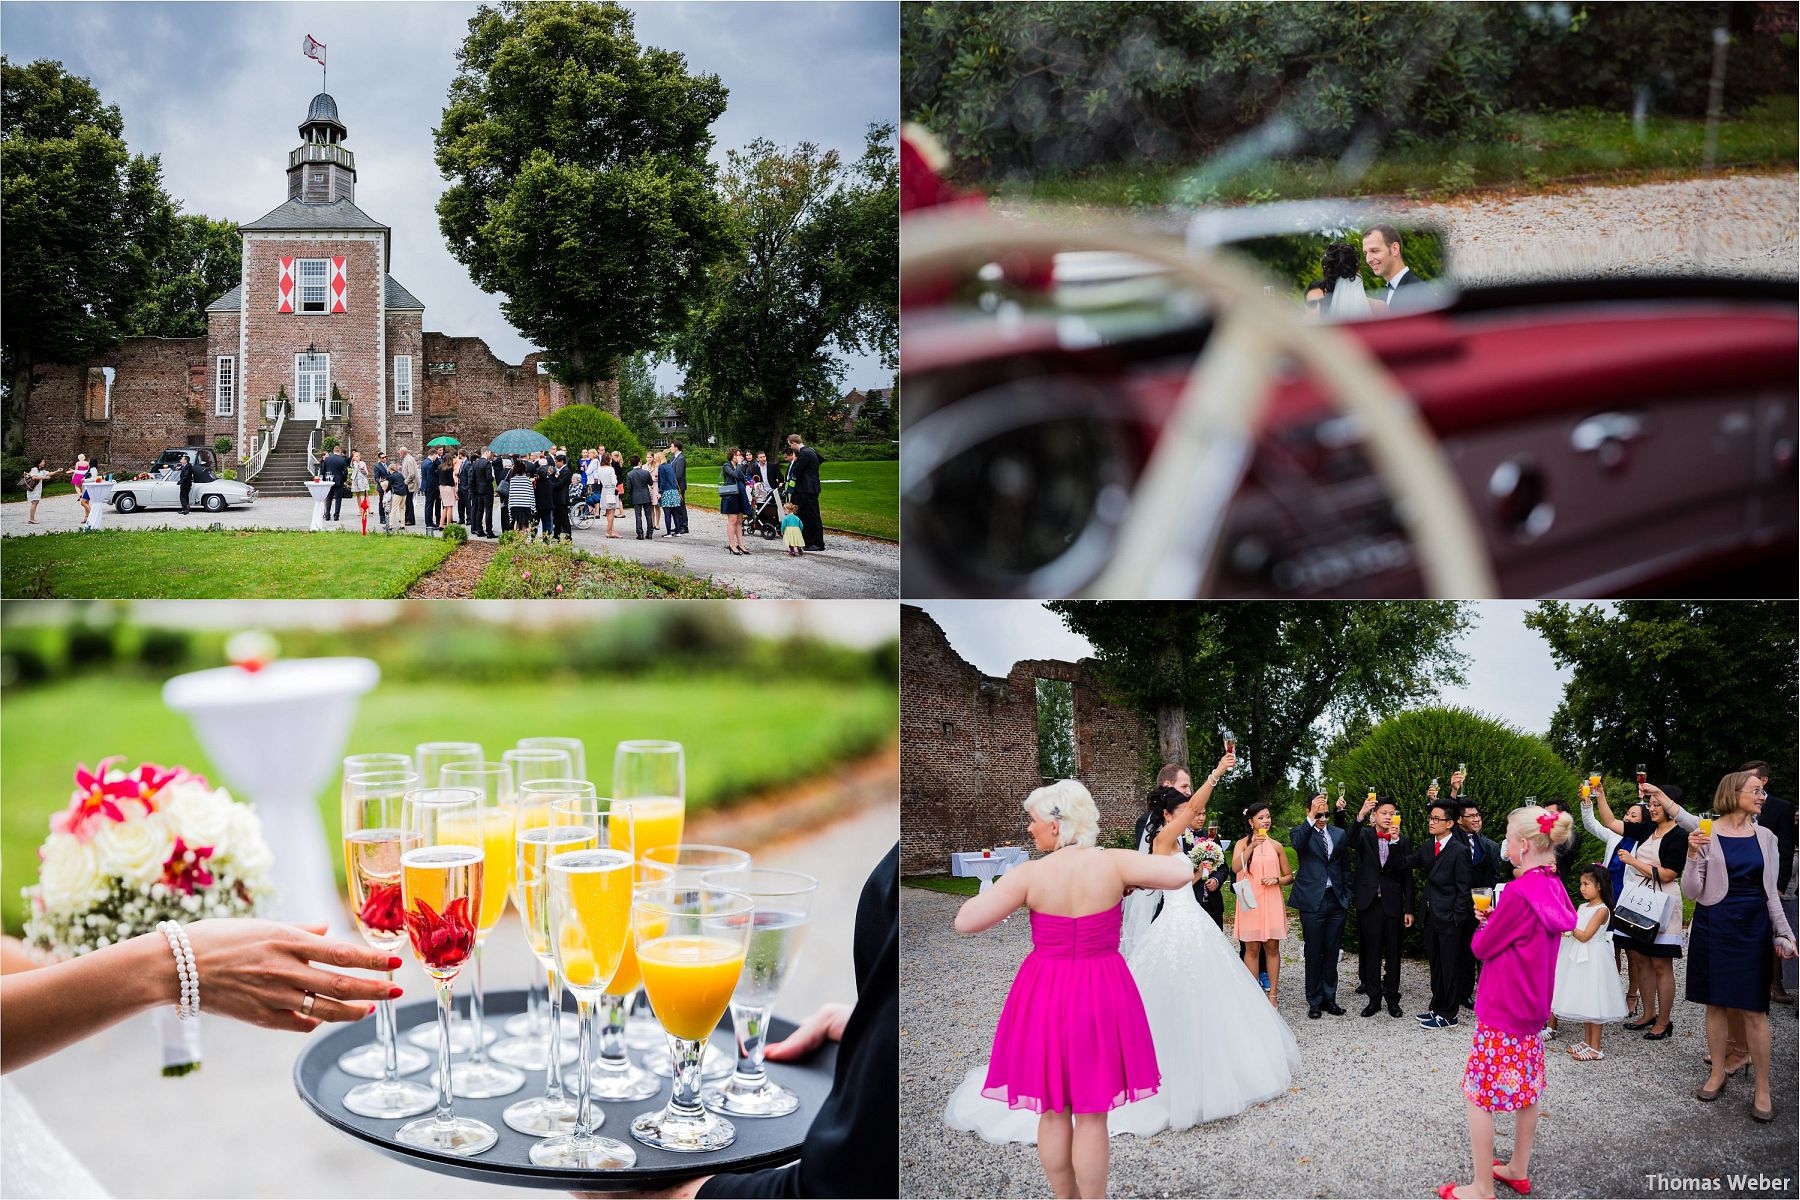 Hochzeitsfotograf Thomas Weber für eine freie Trauung und Hochzeitsfeier in der Schlossruine Hertefeld in Weeze